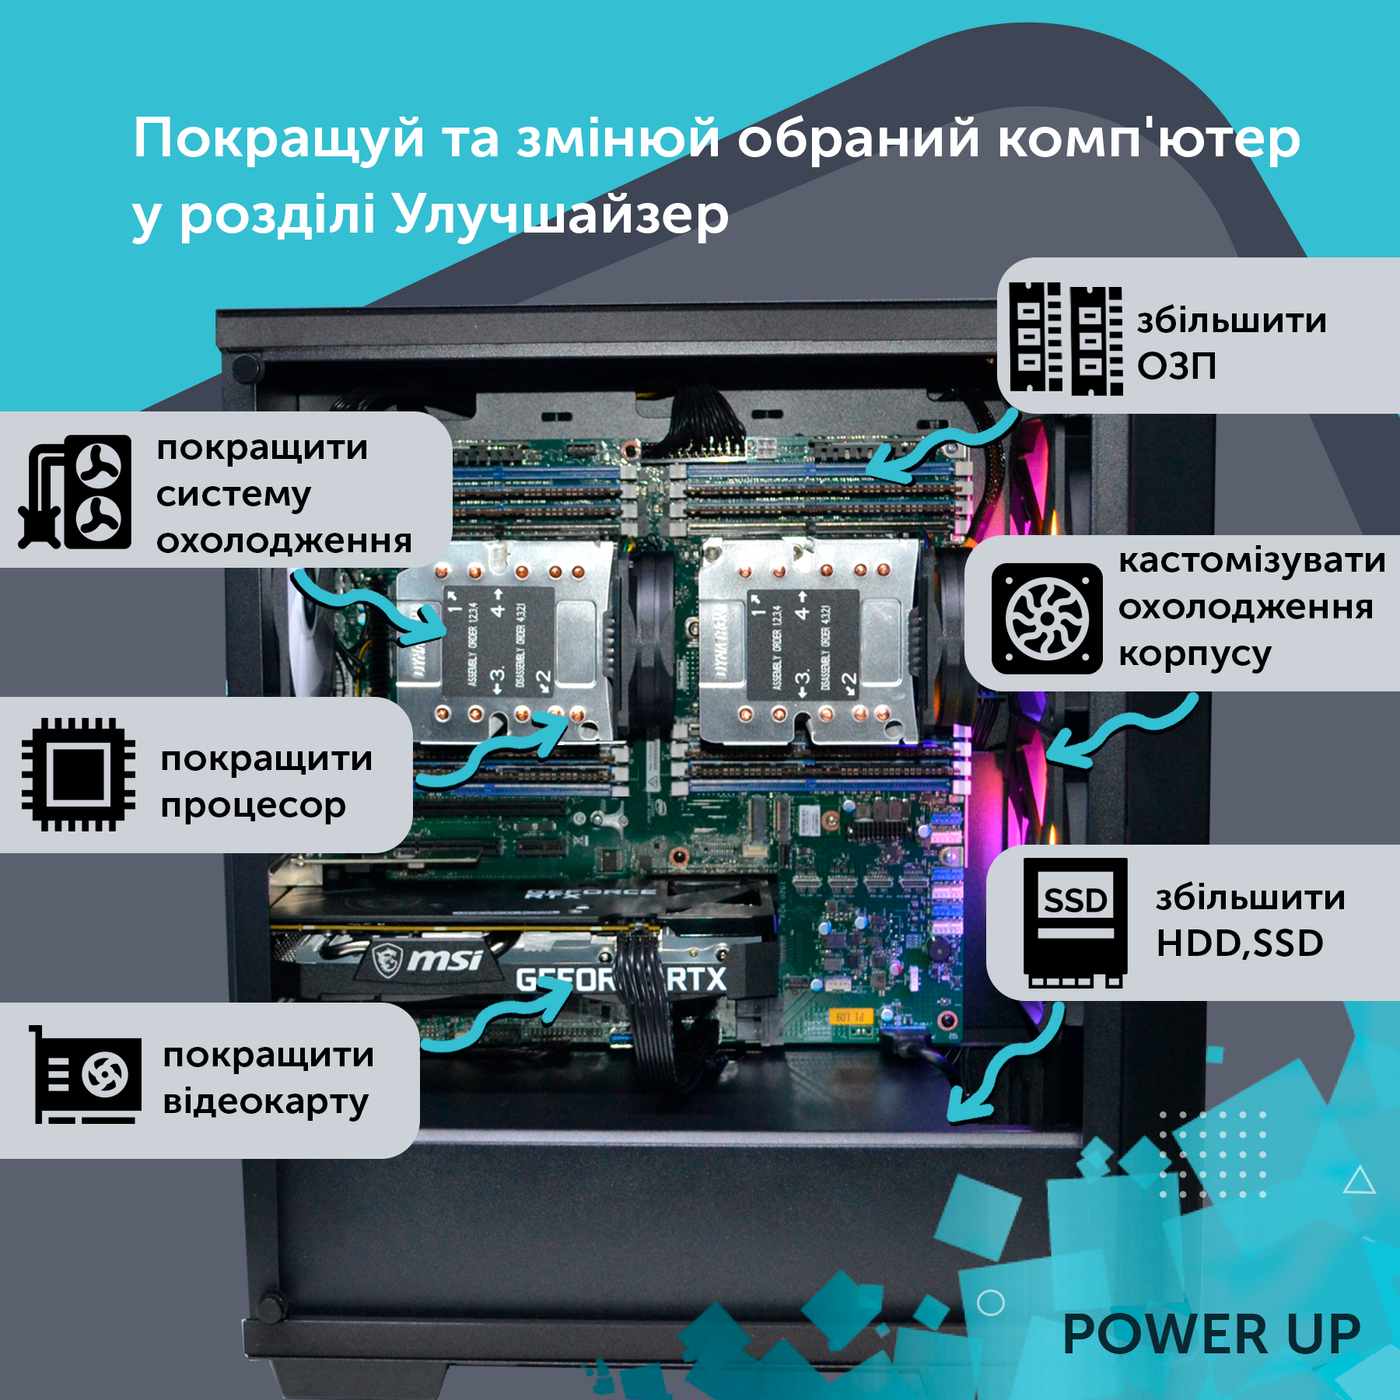 Робоча станція PowerUp Desktop #87 Ryzen 9 5950x/32 GB/HDD 2 TB/SSD 512GB/GeForce RTX 3070 8GB